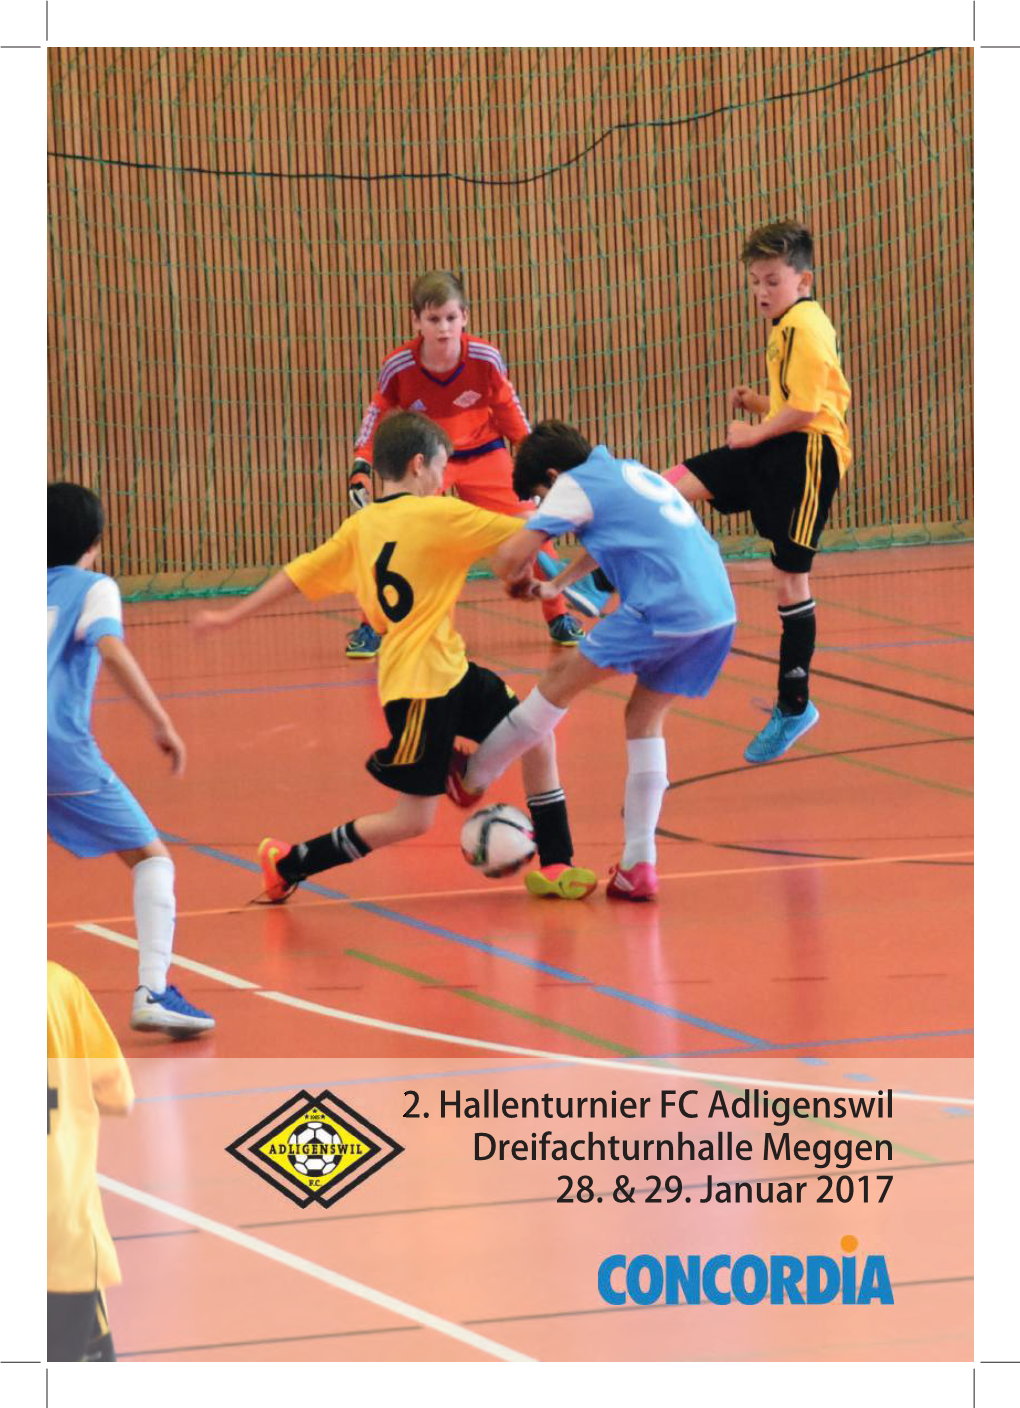 2. Hallenturnier FC Adligenswil Dreifachturnhalle Meggen 28. & 29